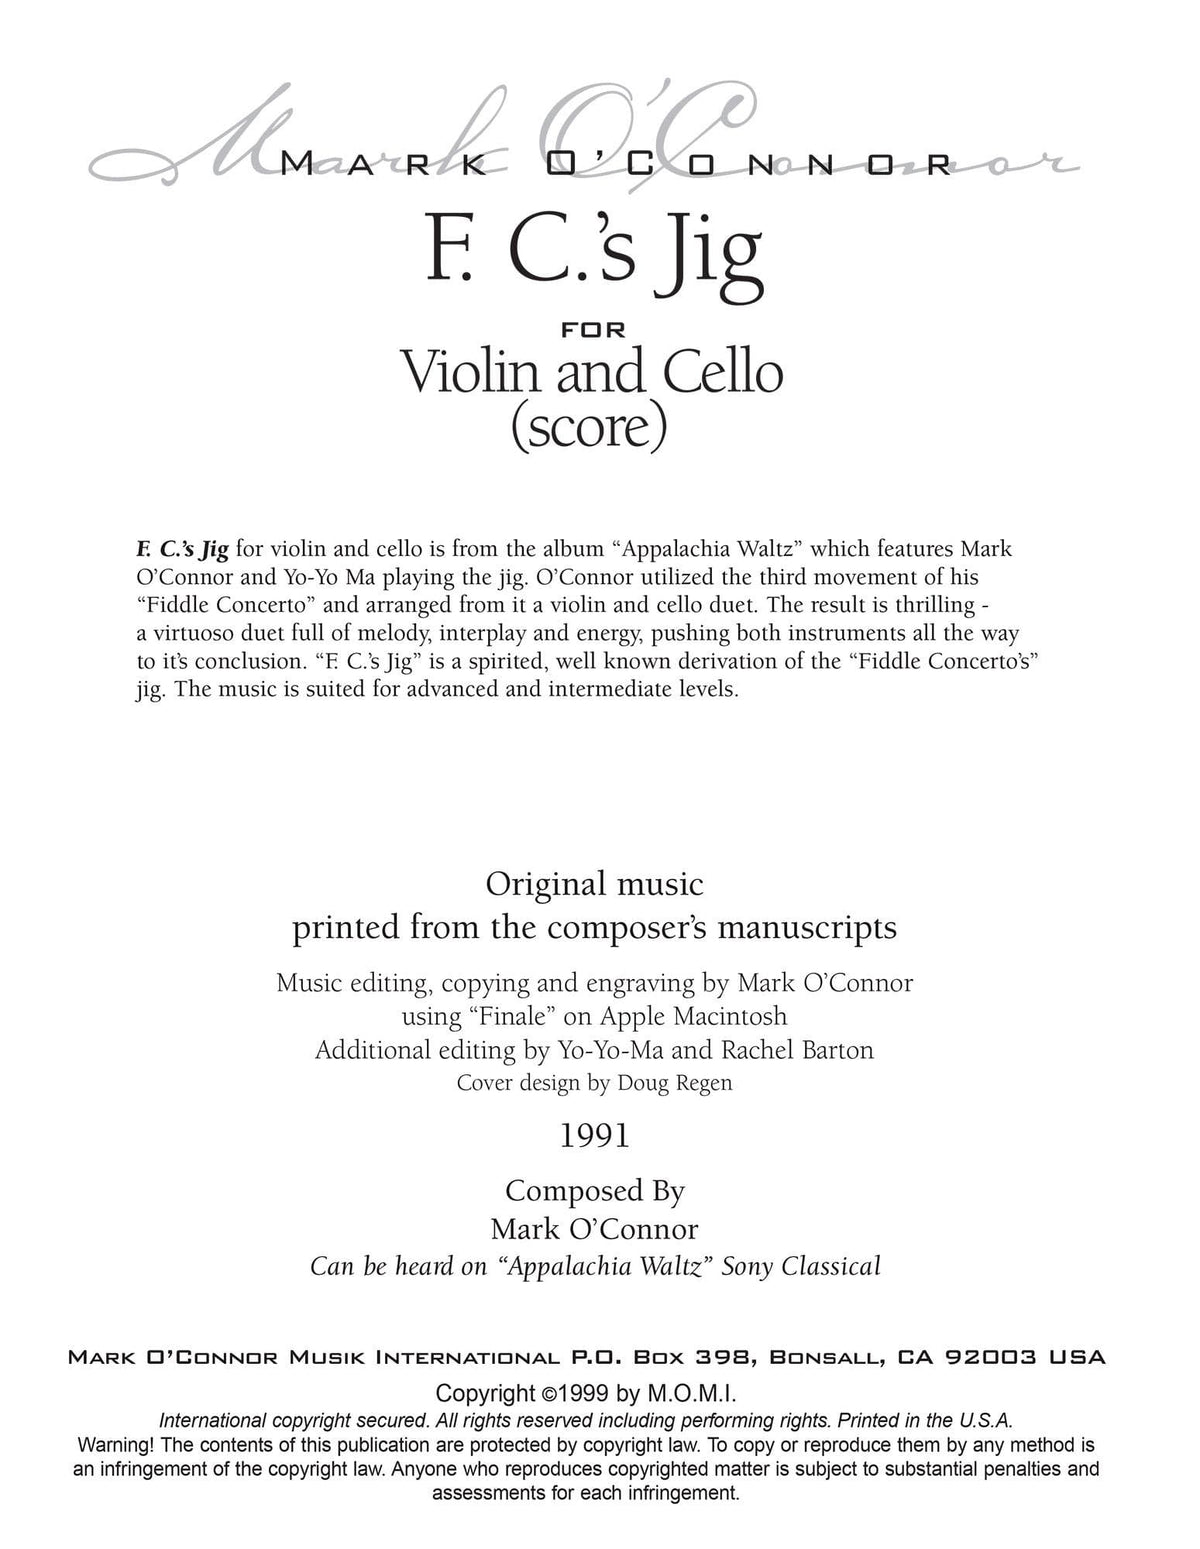 O'Connor, Mark - F.C.'s Jig for Violin and Cello - Score - Digital Download